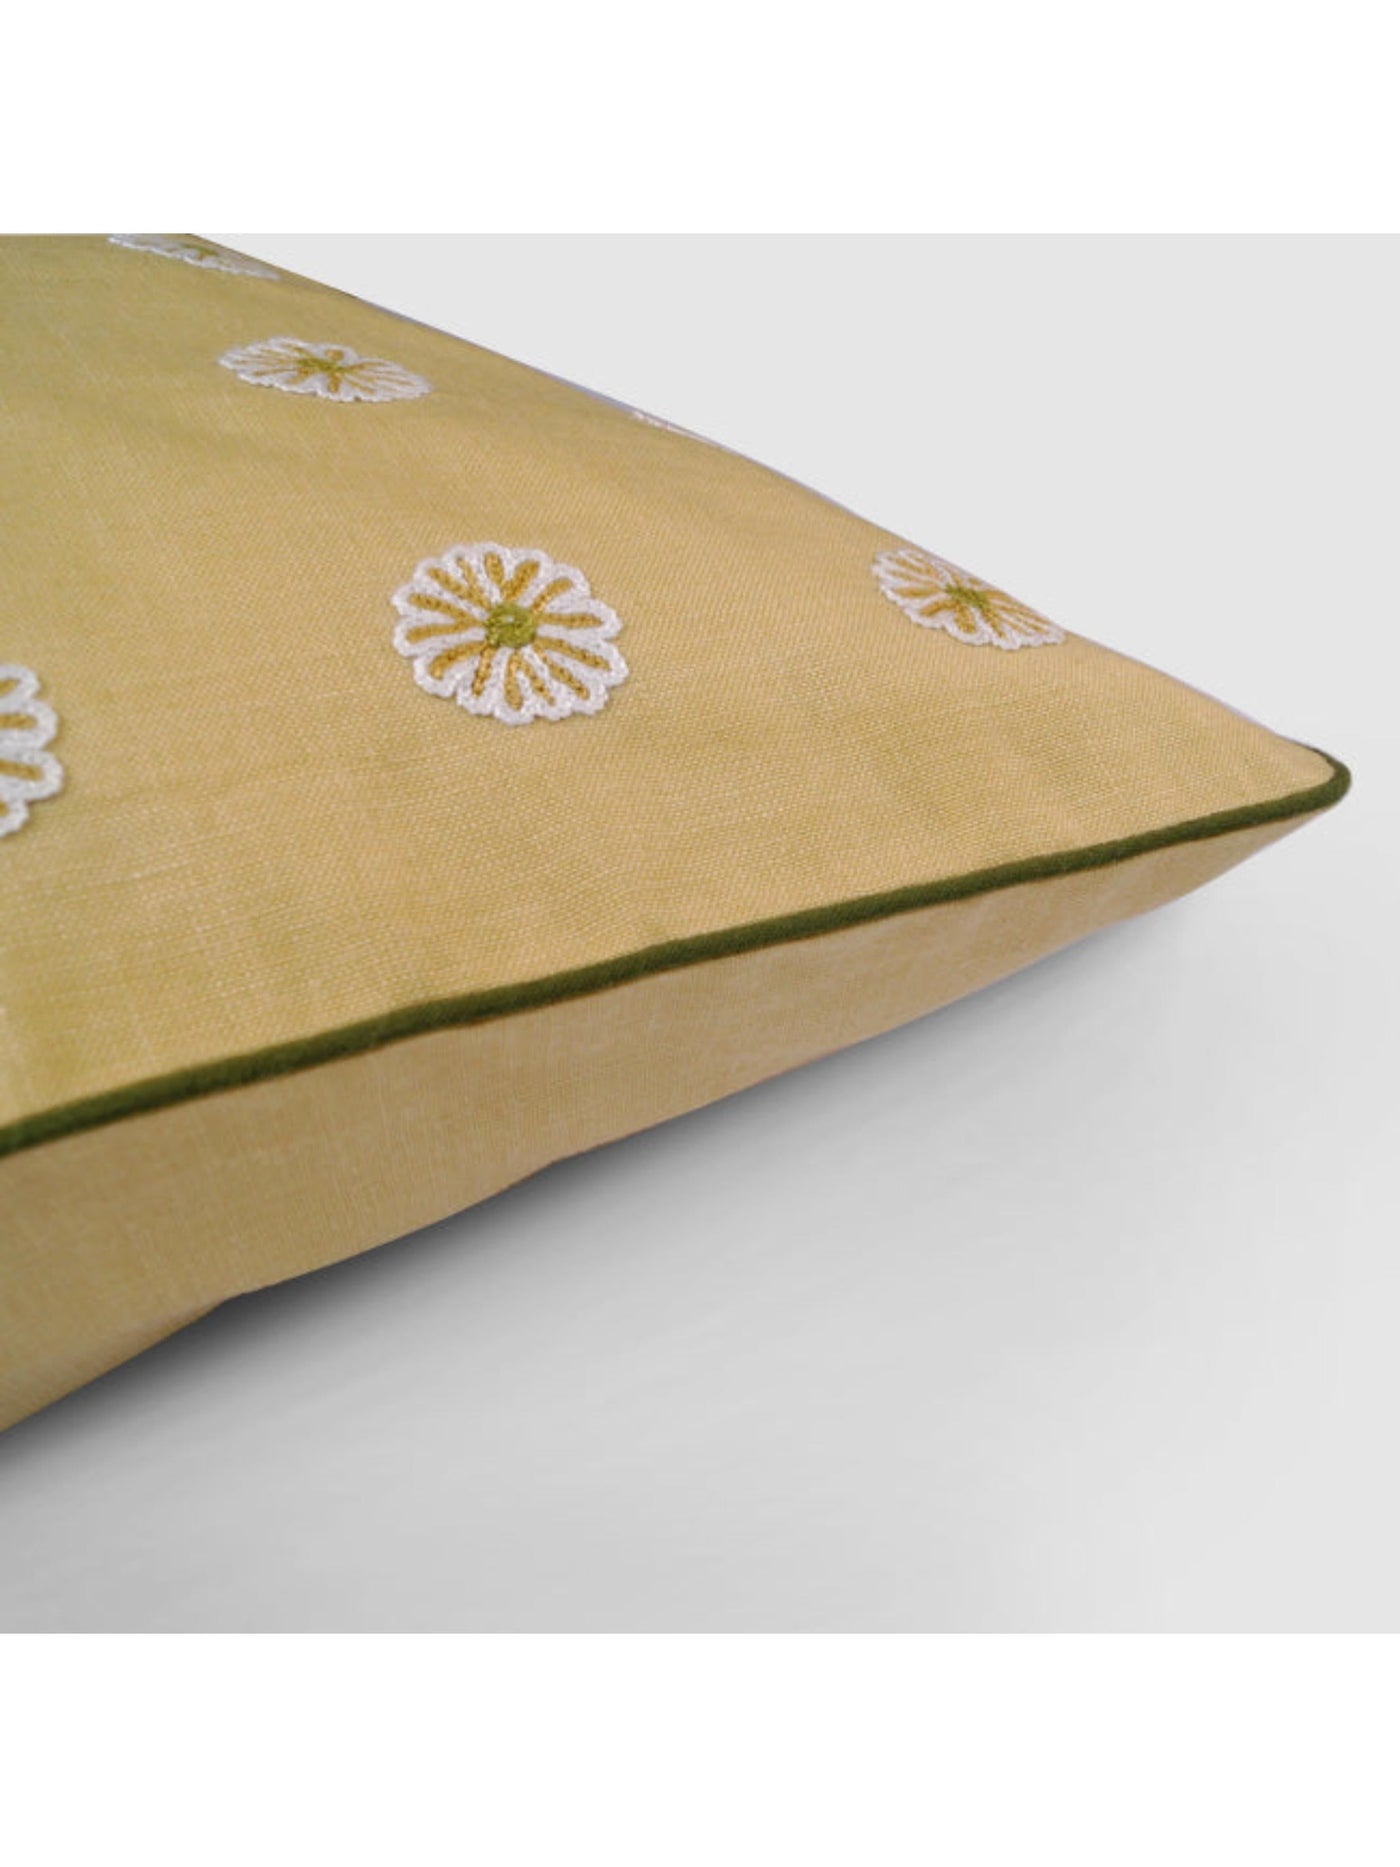 Cushion Cover - Dilara Aari Embroidered Beige